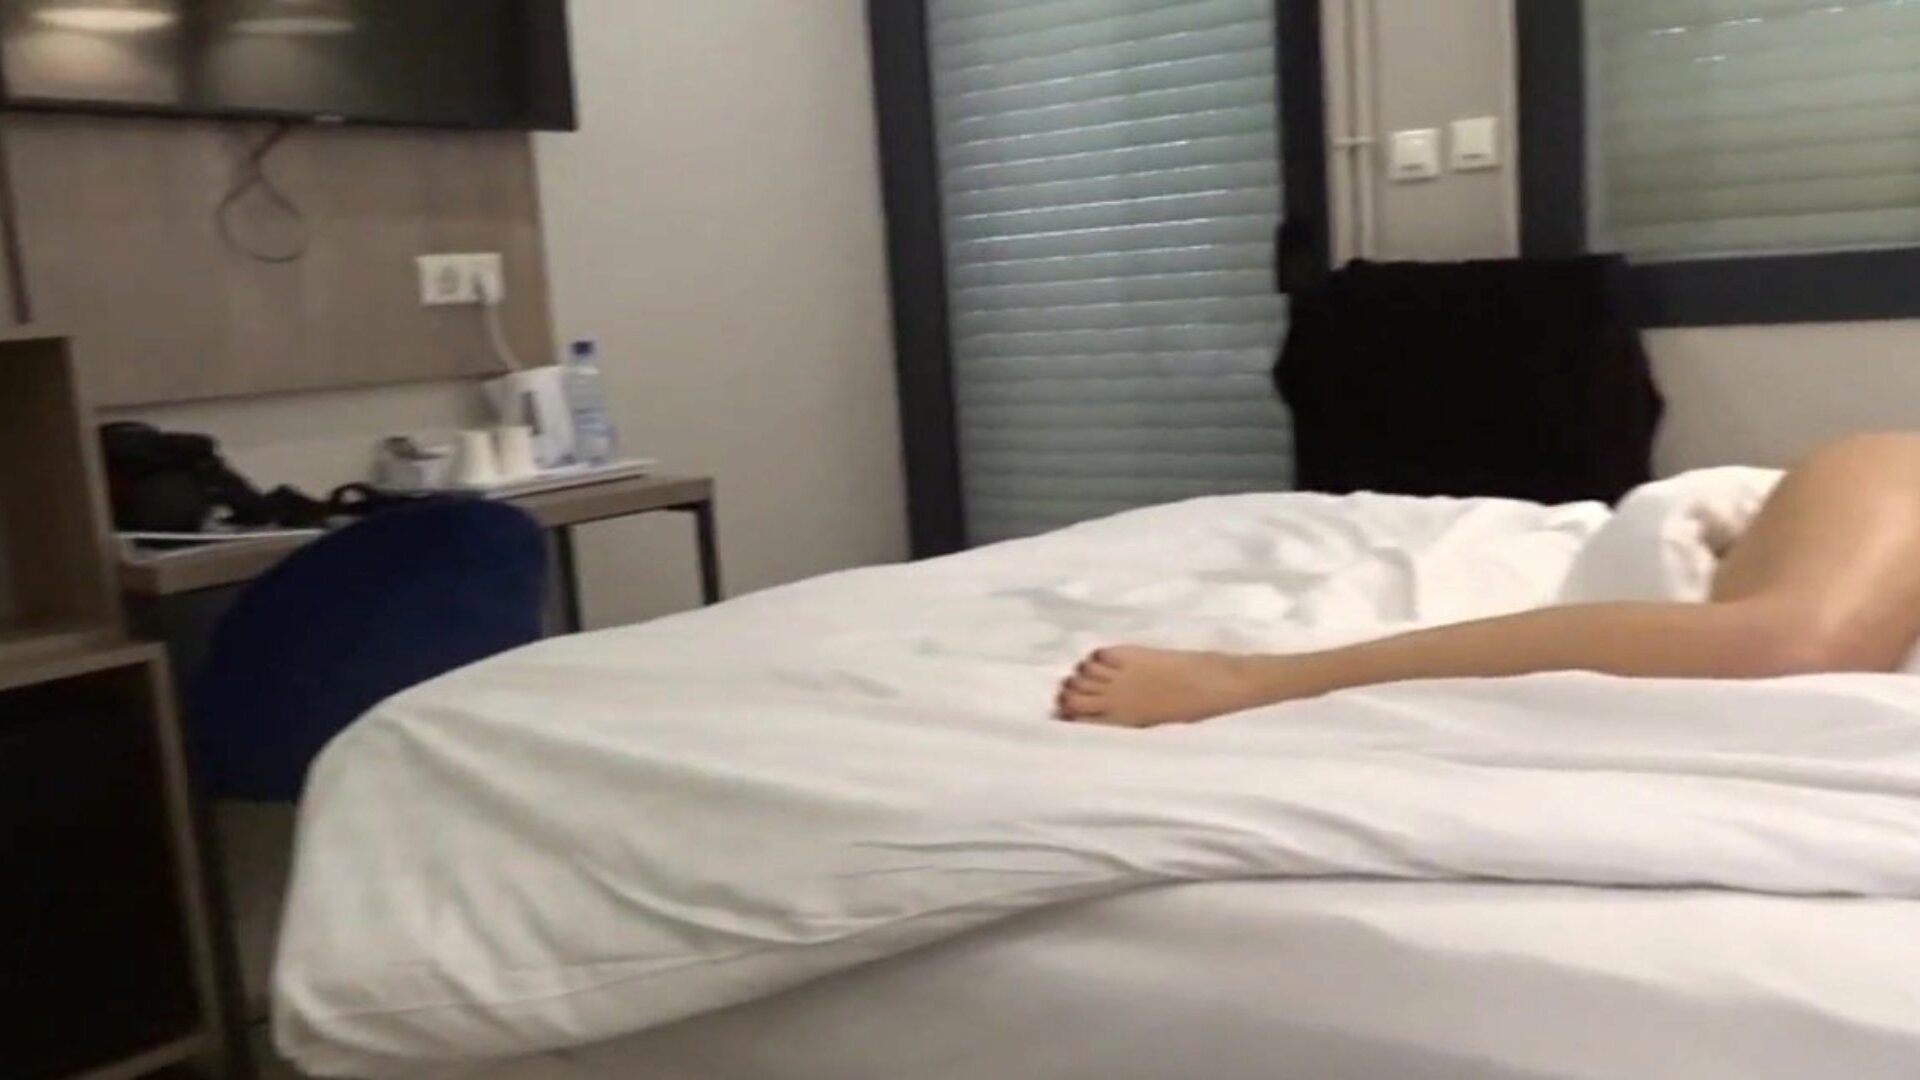 carla-c nua no vídeo do hotel onde estou despida no meu sofá-cama em um quarto de hotel e no banheiro